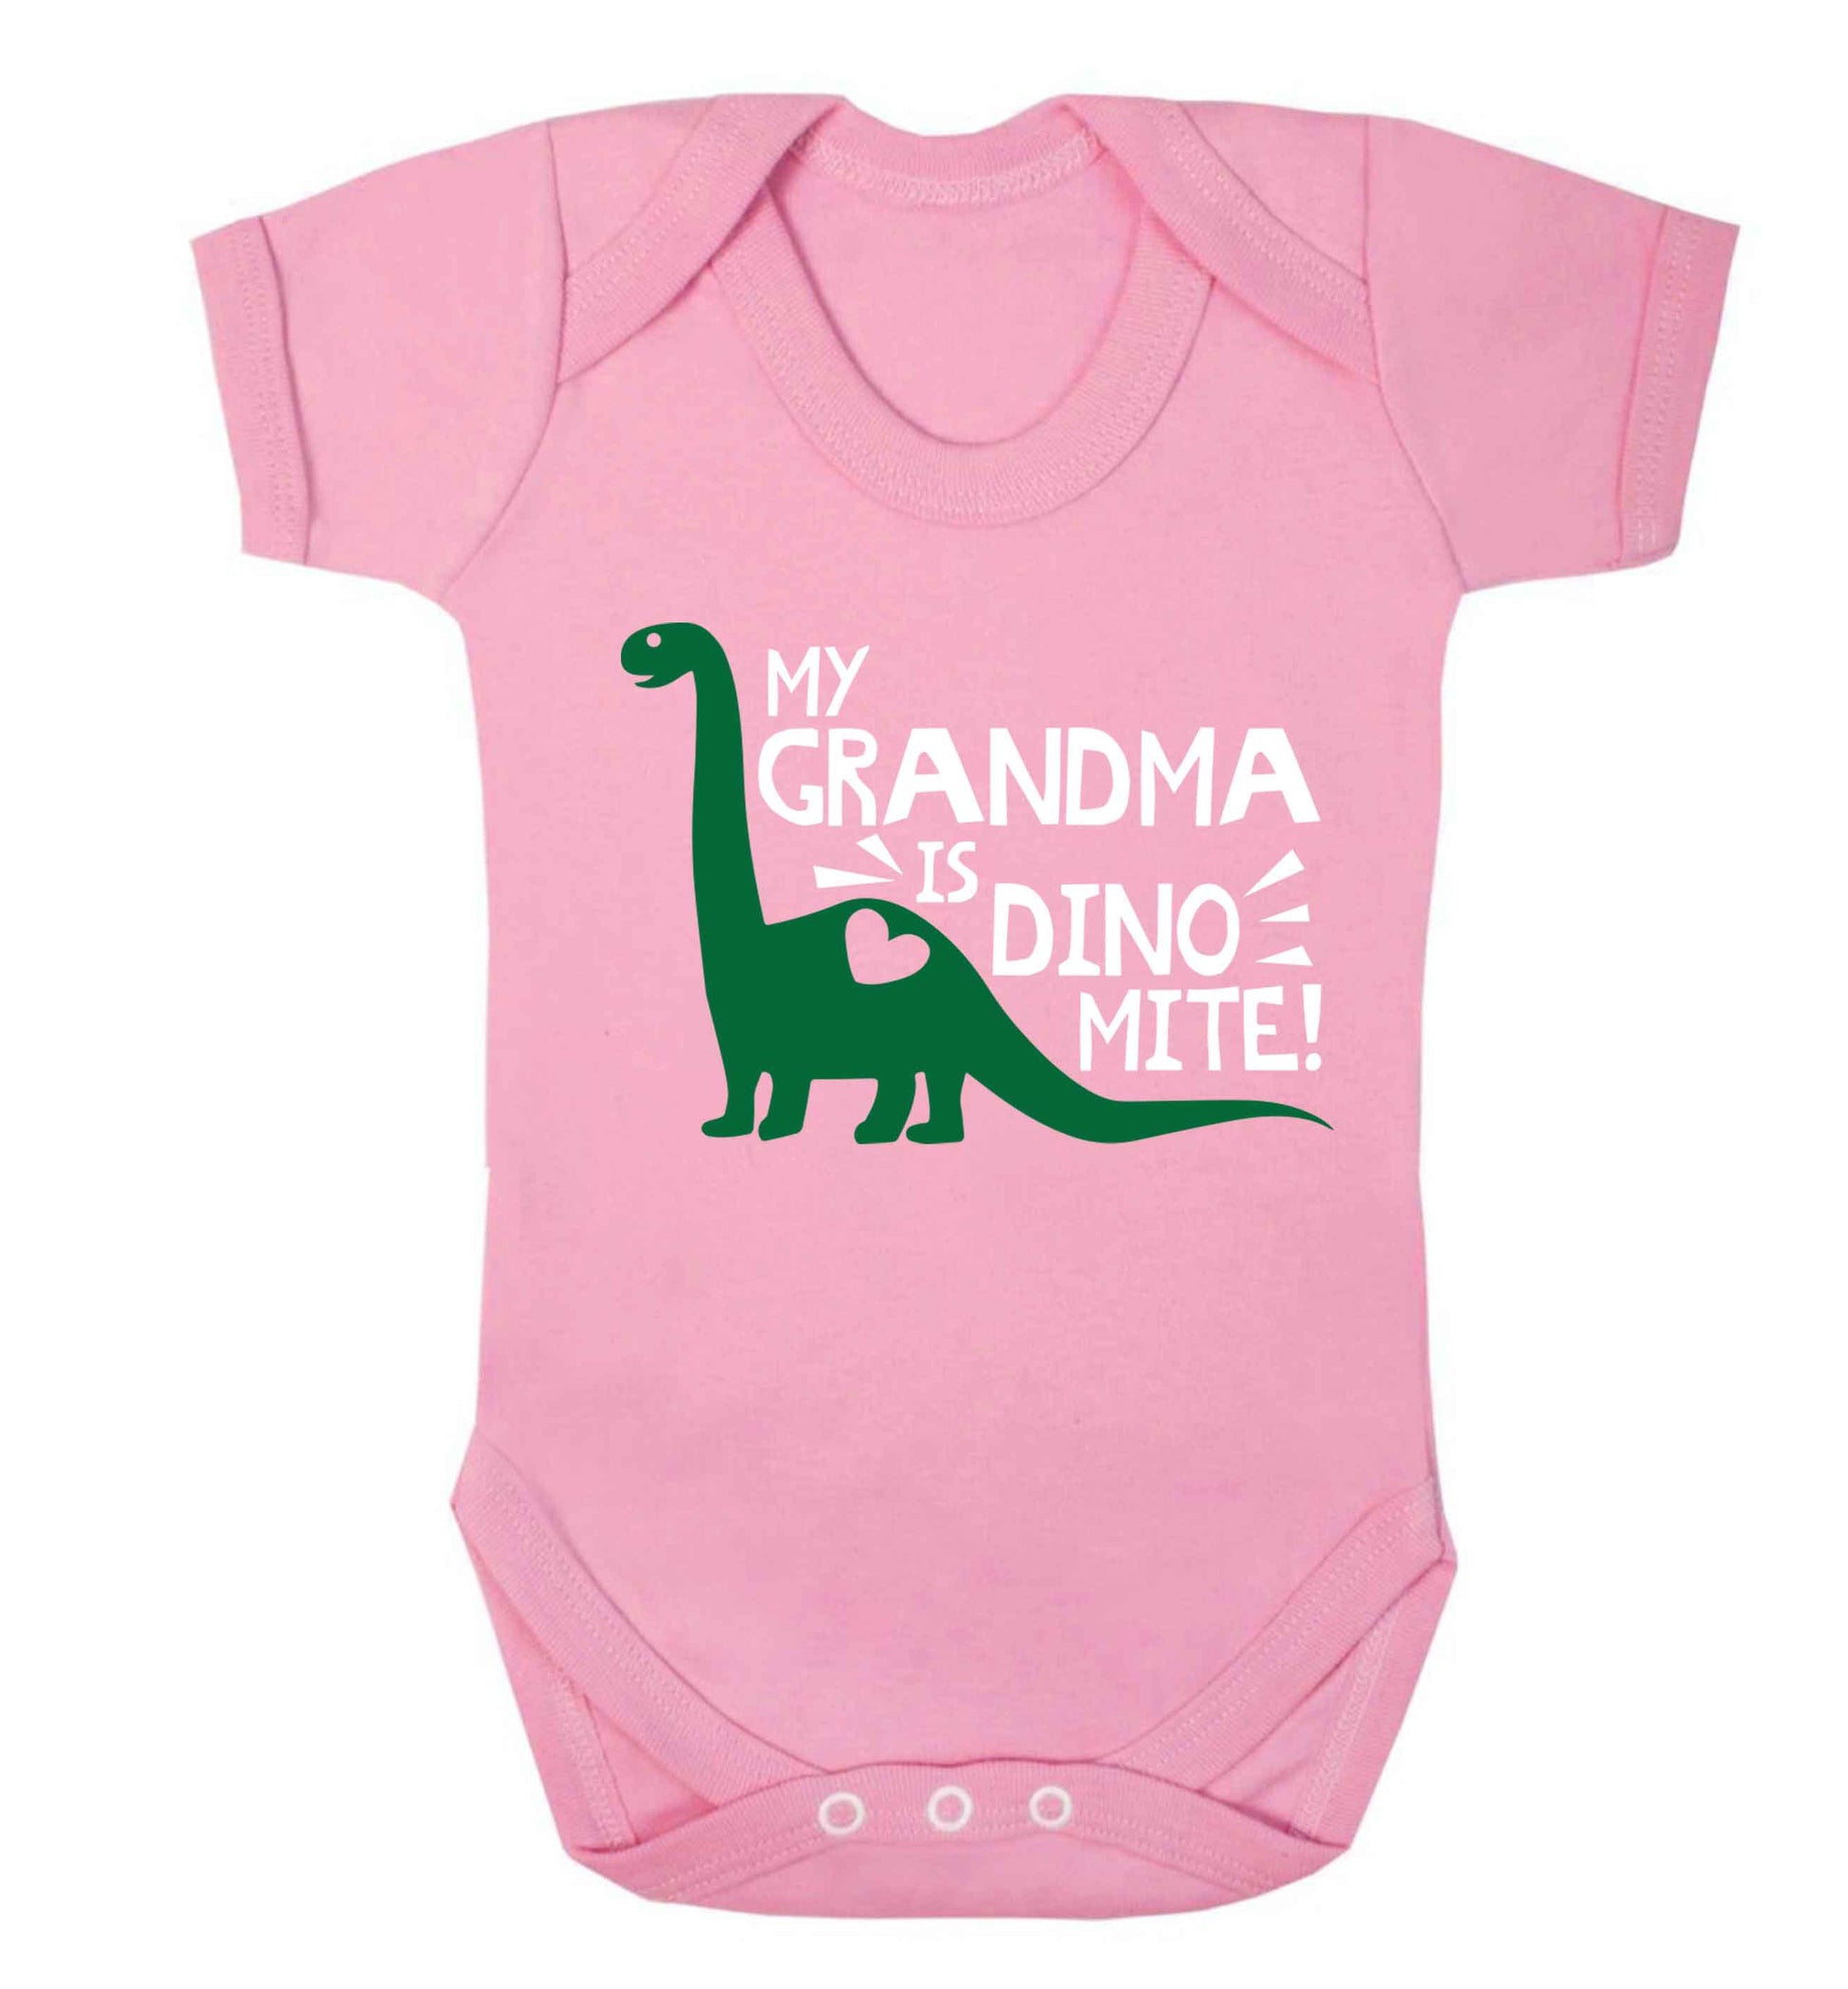 My grandma is dinomite! Baby Vest pale pink 18-24 months